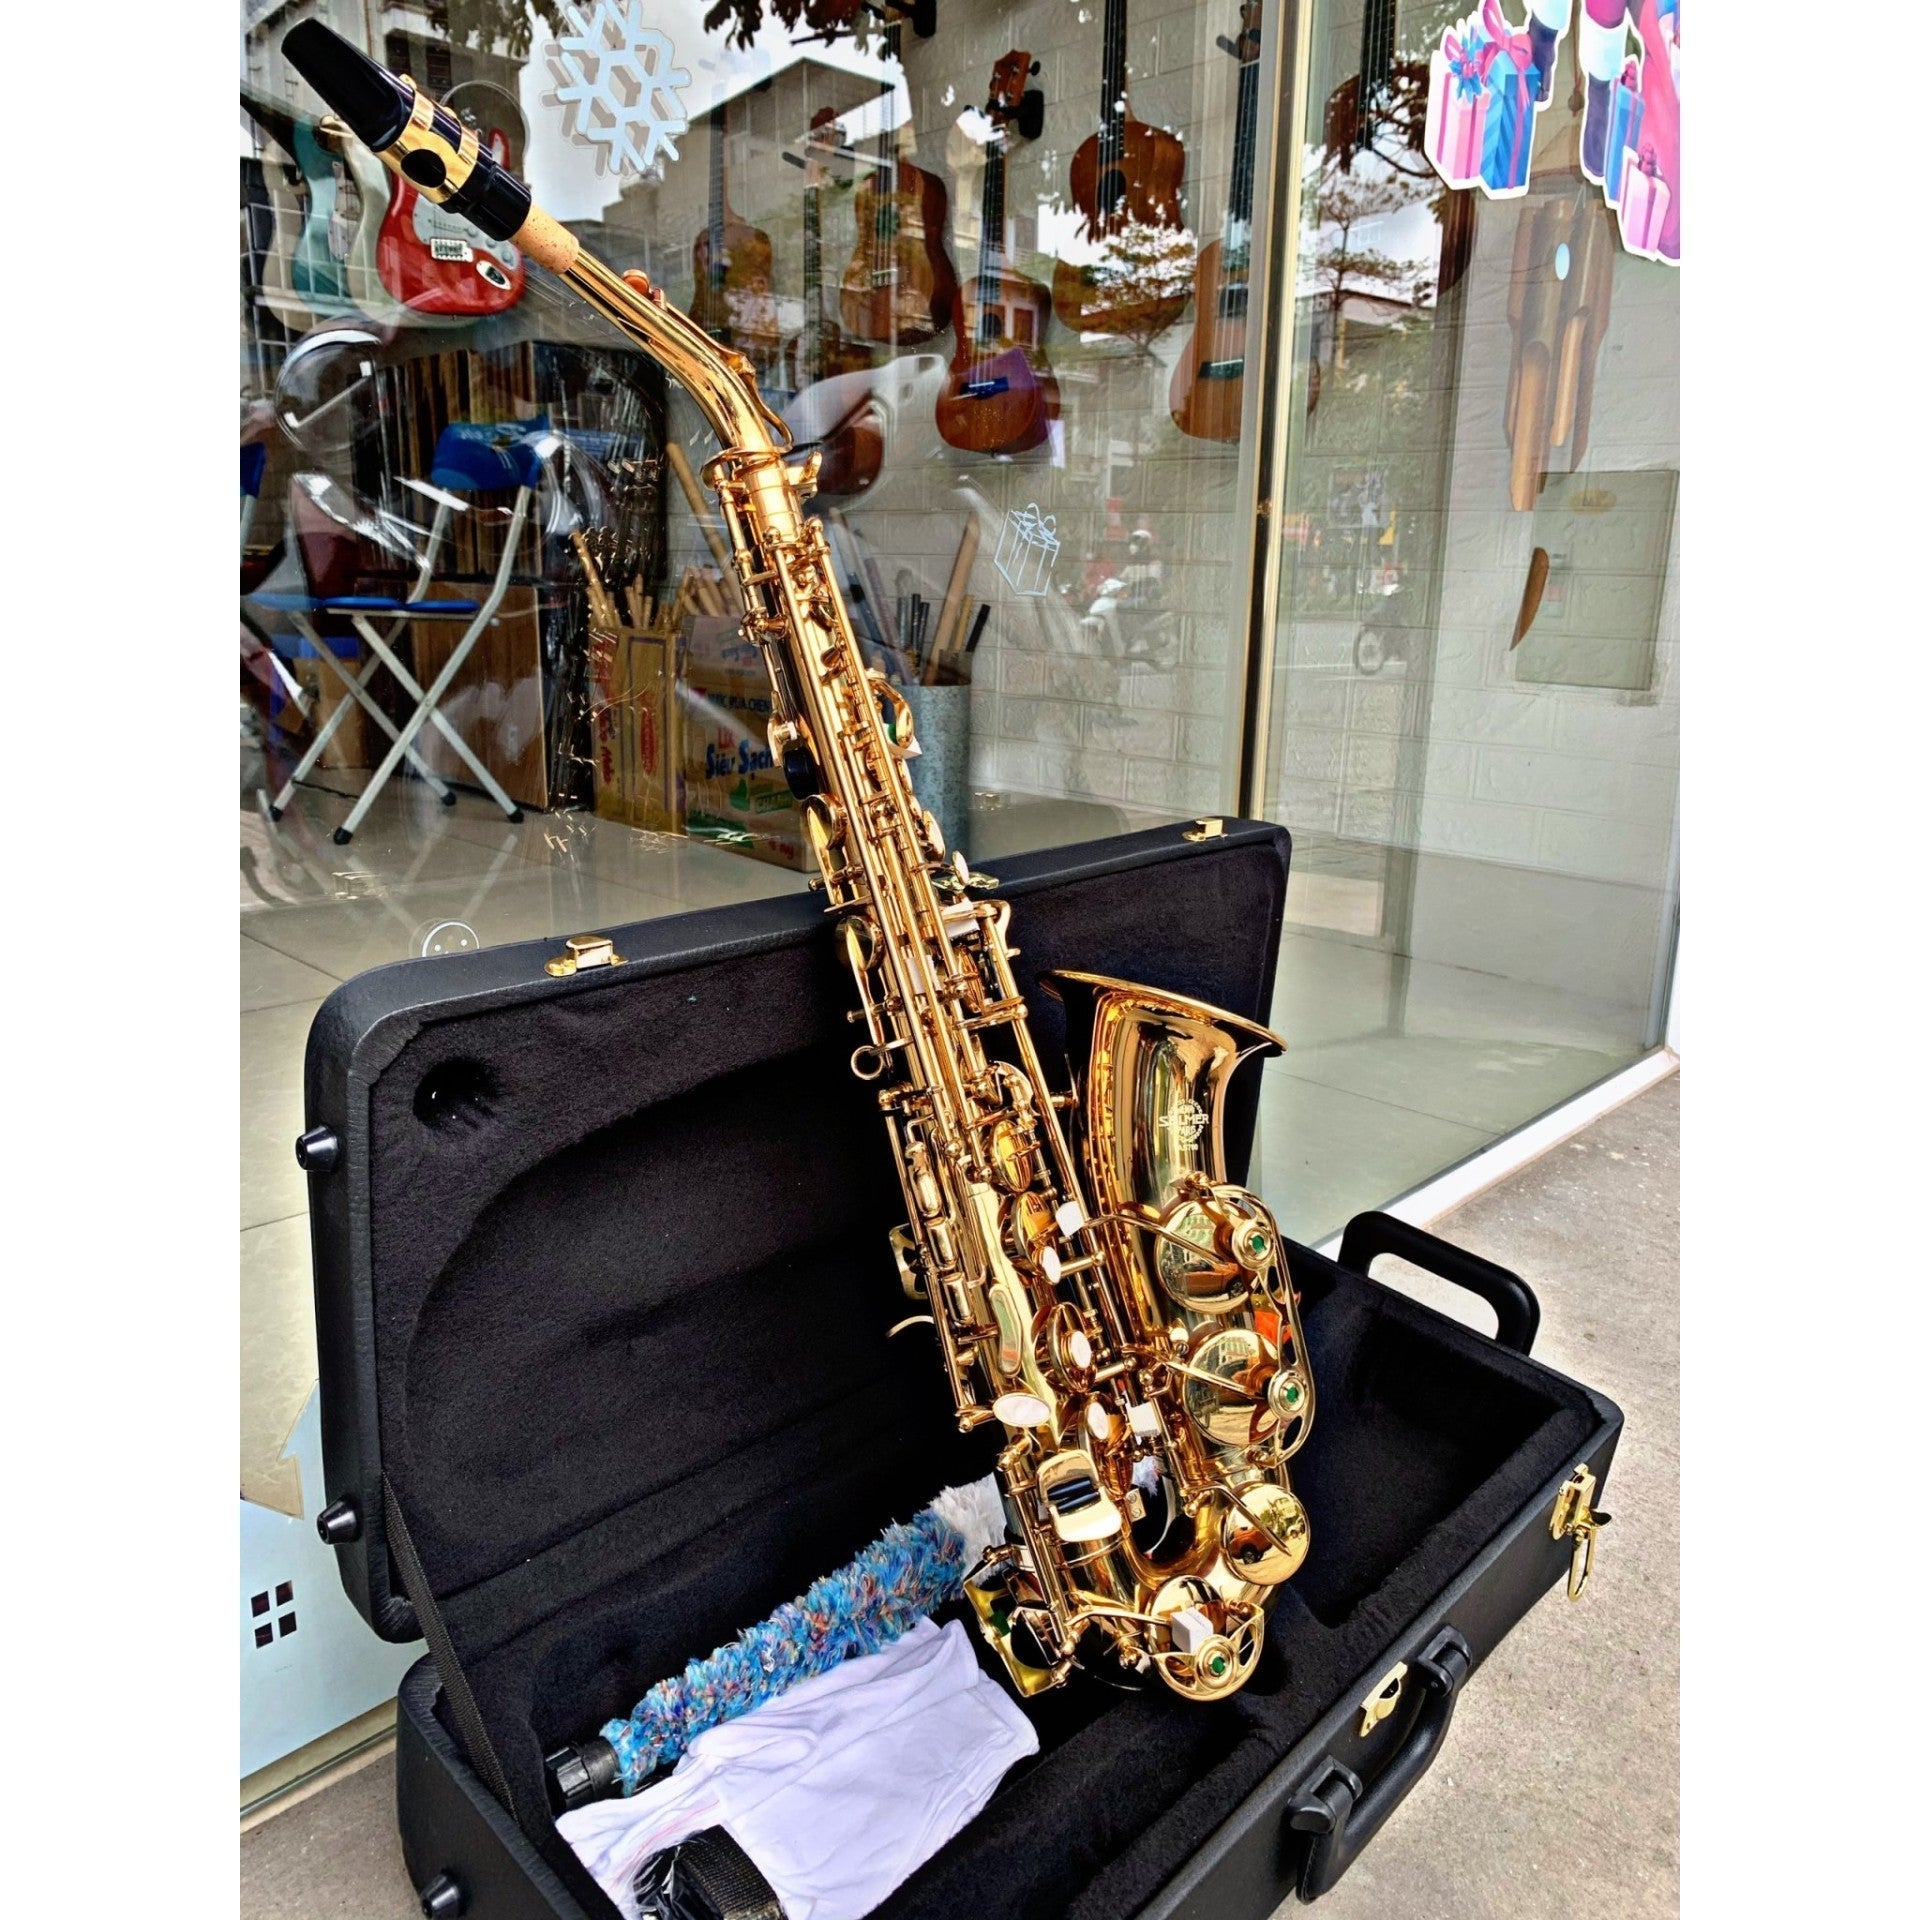 Kèn Saxophone Alto AS700 - Việt Music